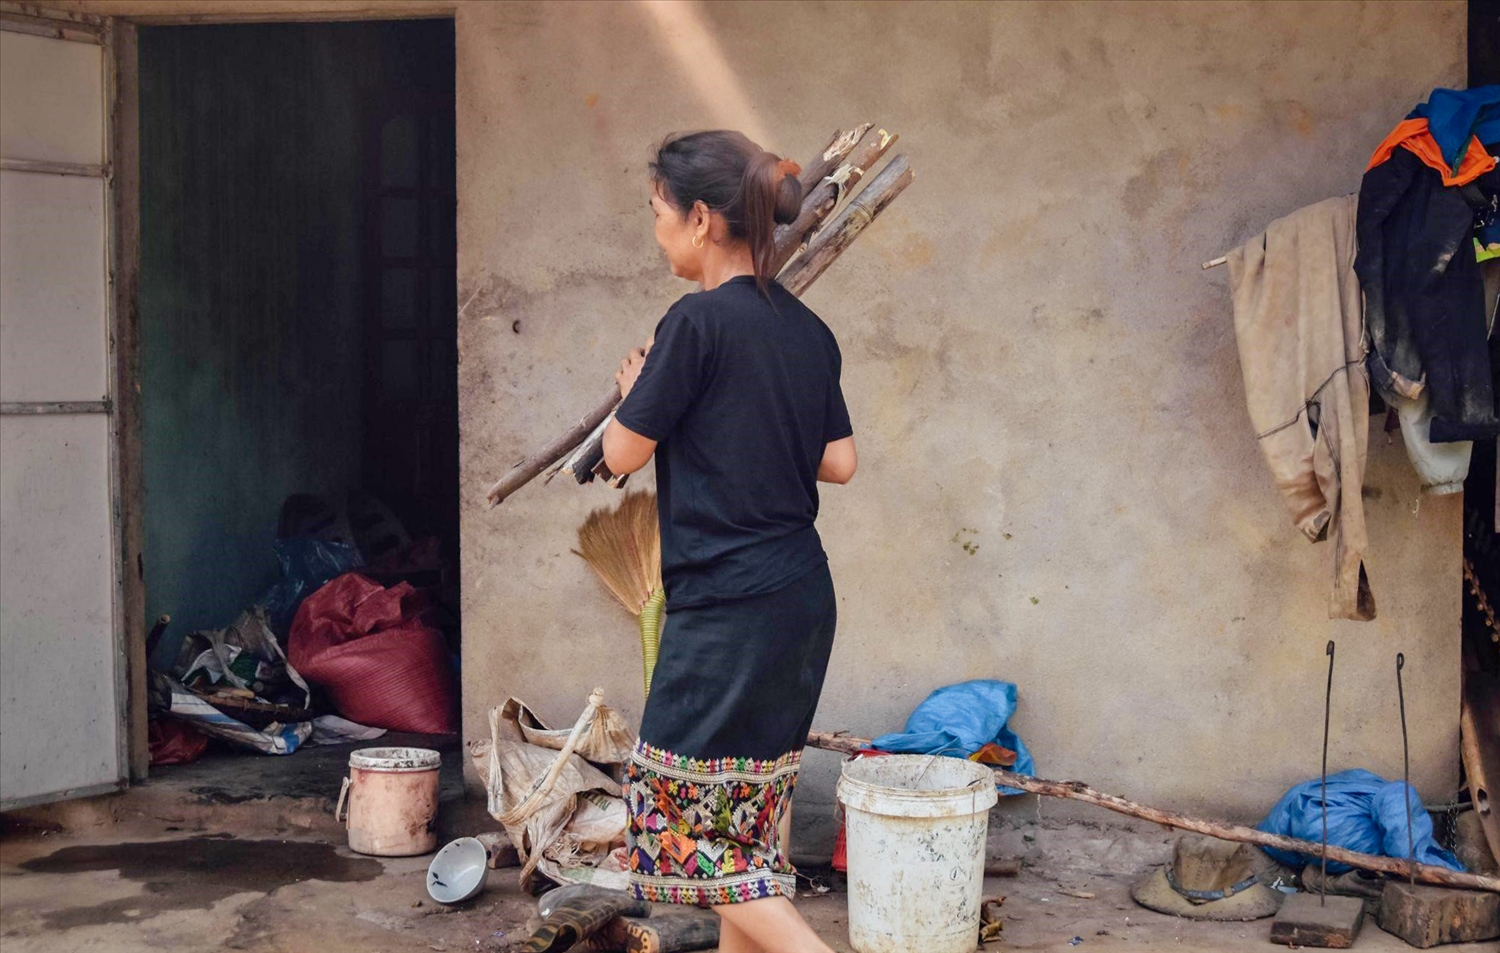 Để dễ dàng lao động và sinh hoạt, phụ nữ dân tộc Lào thường mặc áo phông hiện đại cùng váy thổ cẩm truyền thống. Họa tiết thổ cẩm của người Lào tượng trưng cho vẻ đẹp cây cỏ, thường bao gồm các màu: trắng, hồng, vàng, tím, xanh được nhuộm từ chàm, vỏ, lá cây rừng